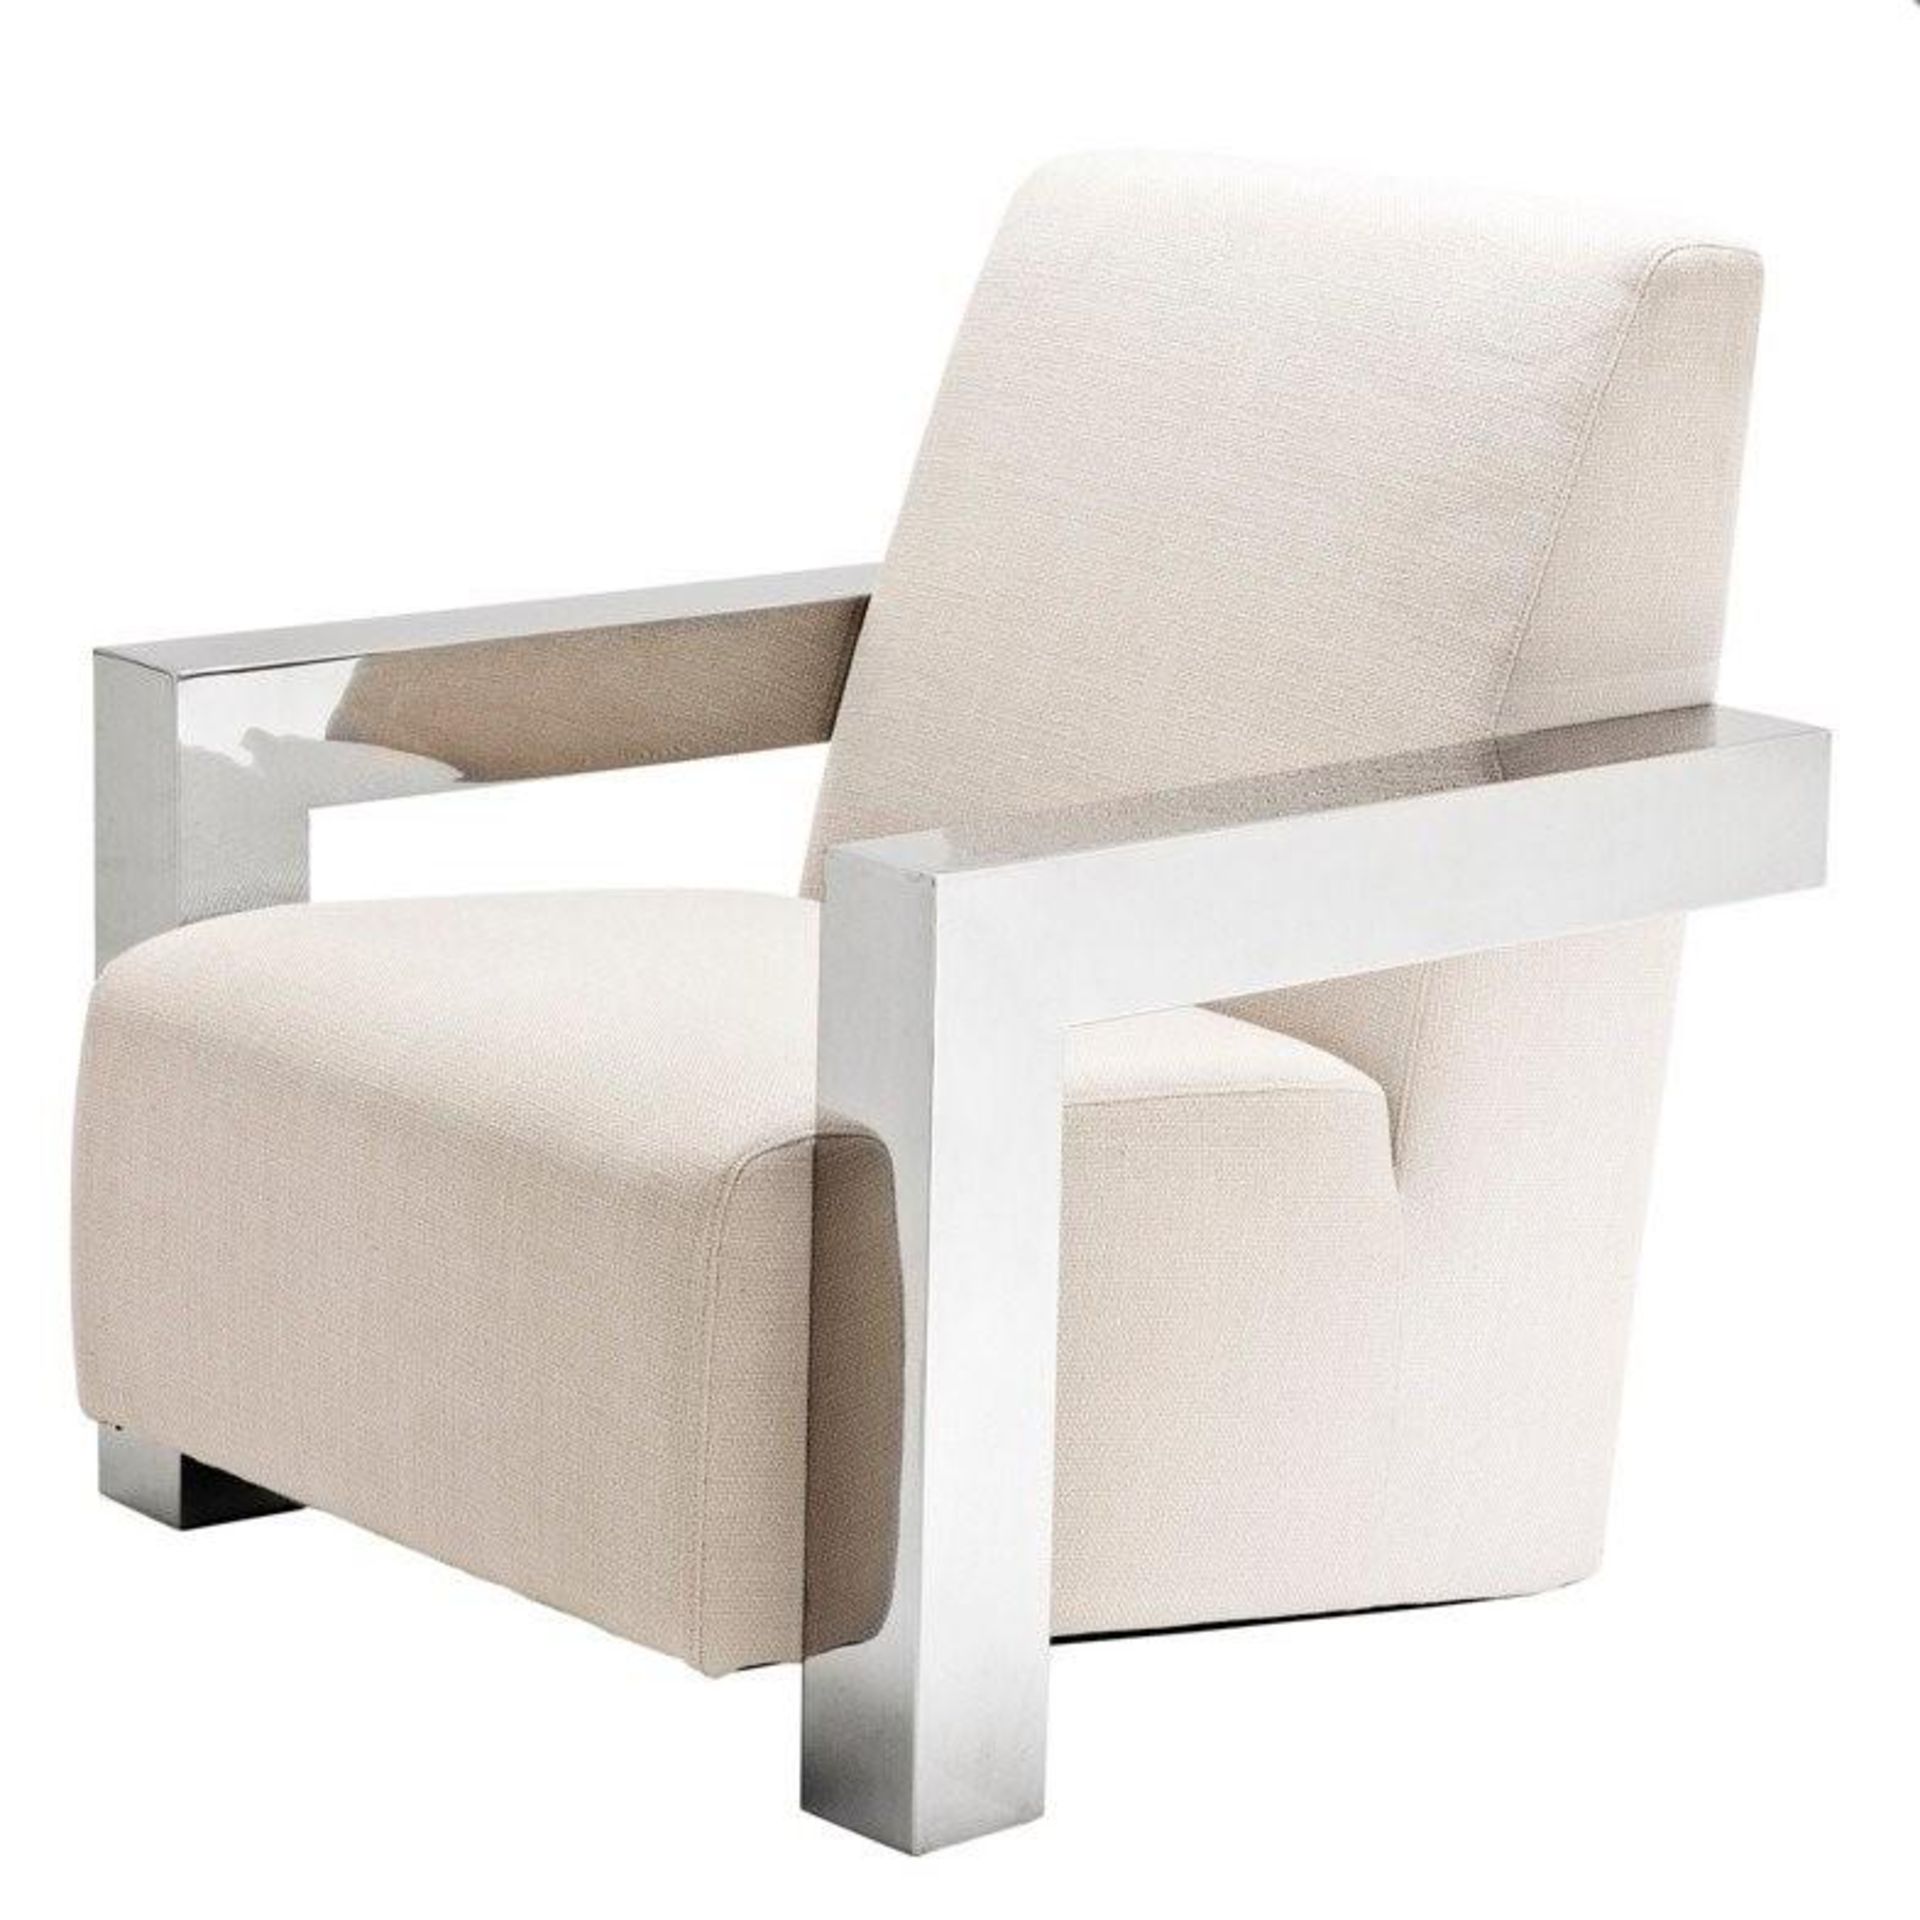 1 x EICHHOLTZ "Franco" Chair - Colour: Panama/Natural - Dimensions: W84cm, D85cm, H85cm, Seat - Image 2 of 10